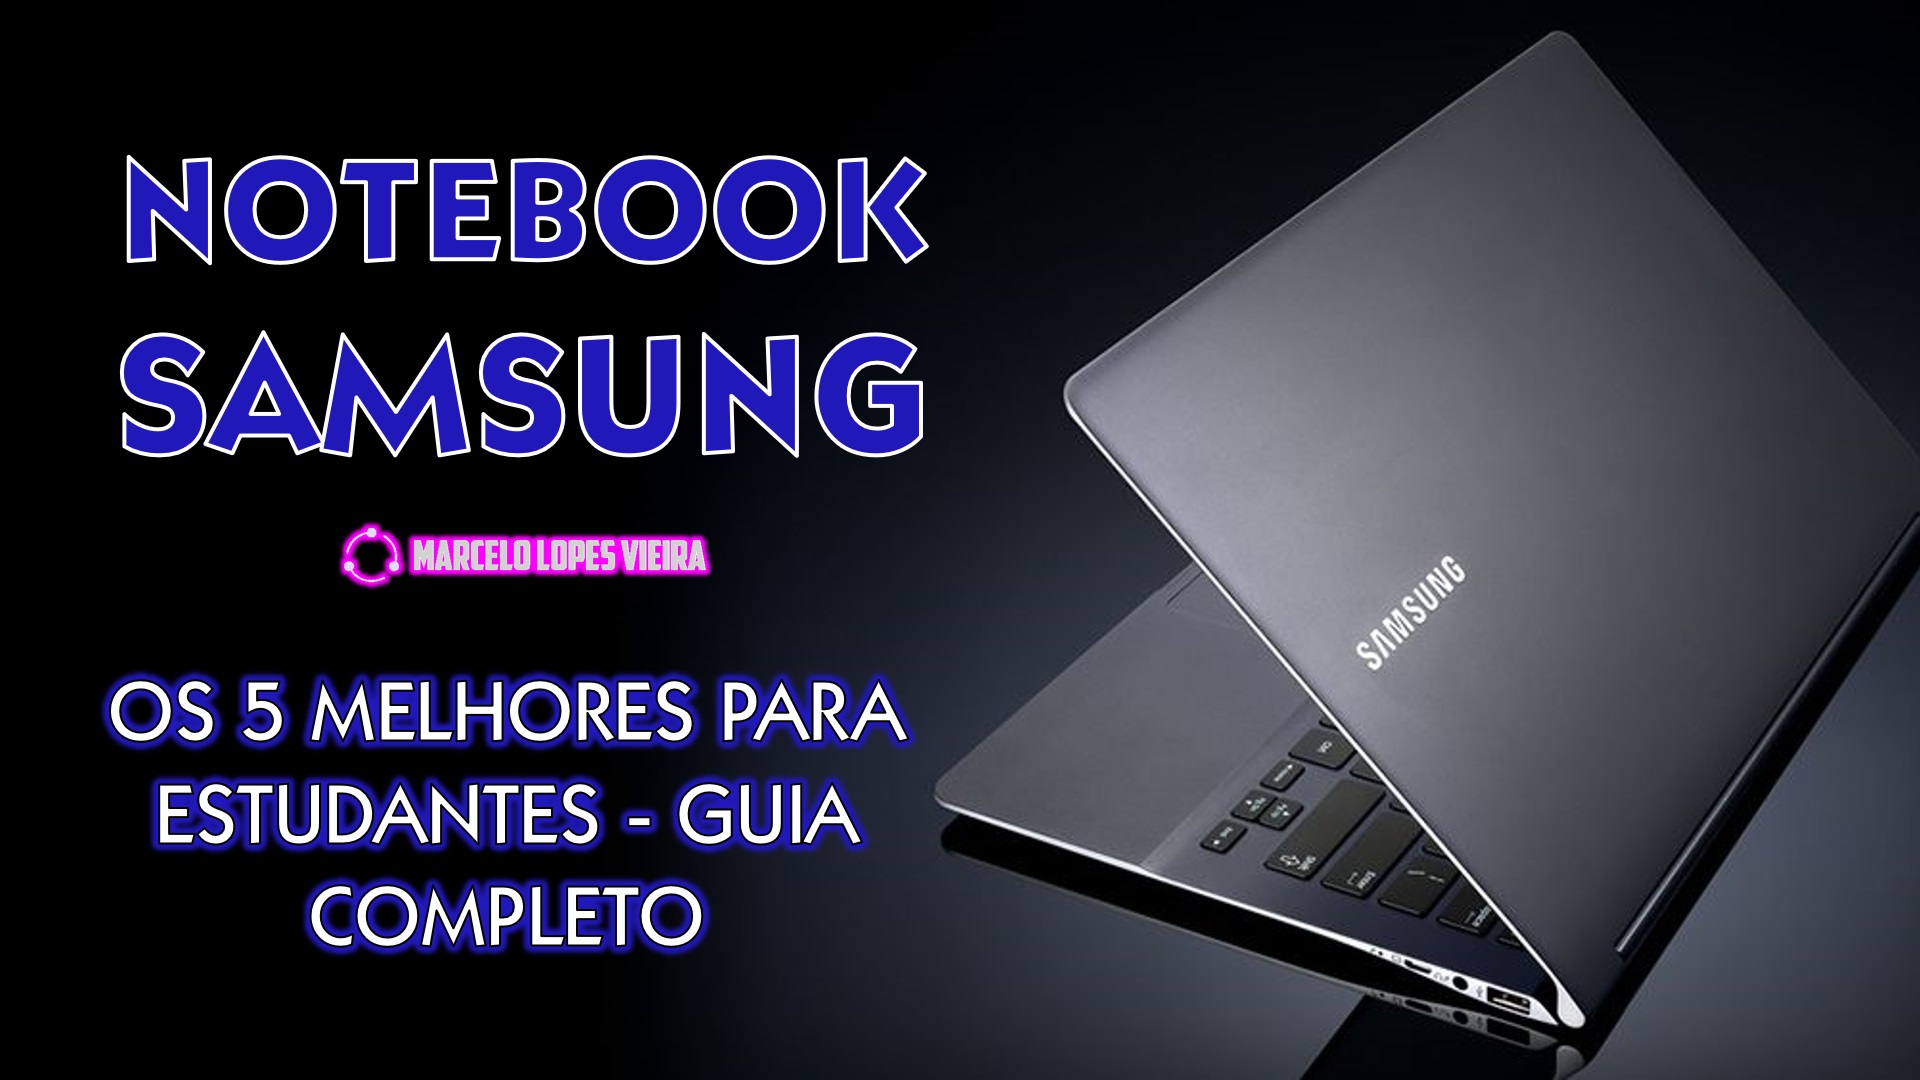 Encontre o laptop Samsung perfeito para suas necessidades. Dos potentes Galaxy Book2 Pro aos Chromebooks luxuosos e acessíveis, explore nossa análise abrangente para tomar uma decisão informada.